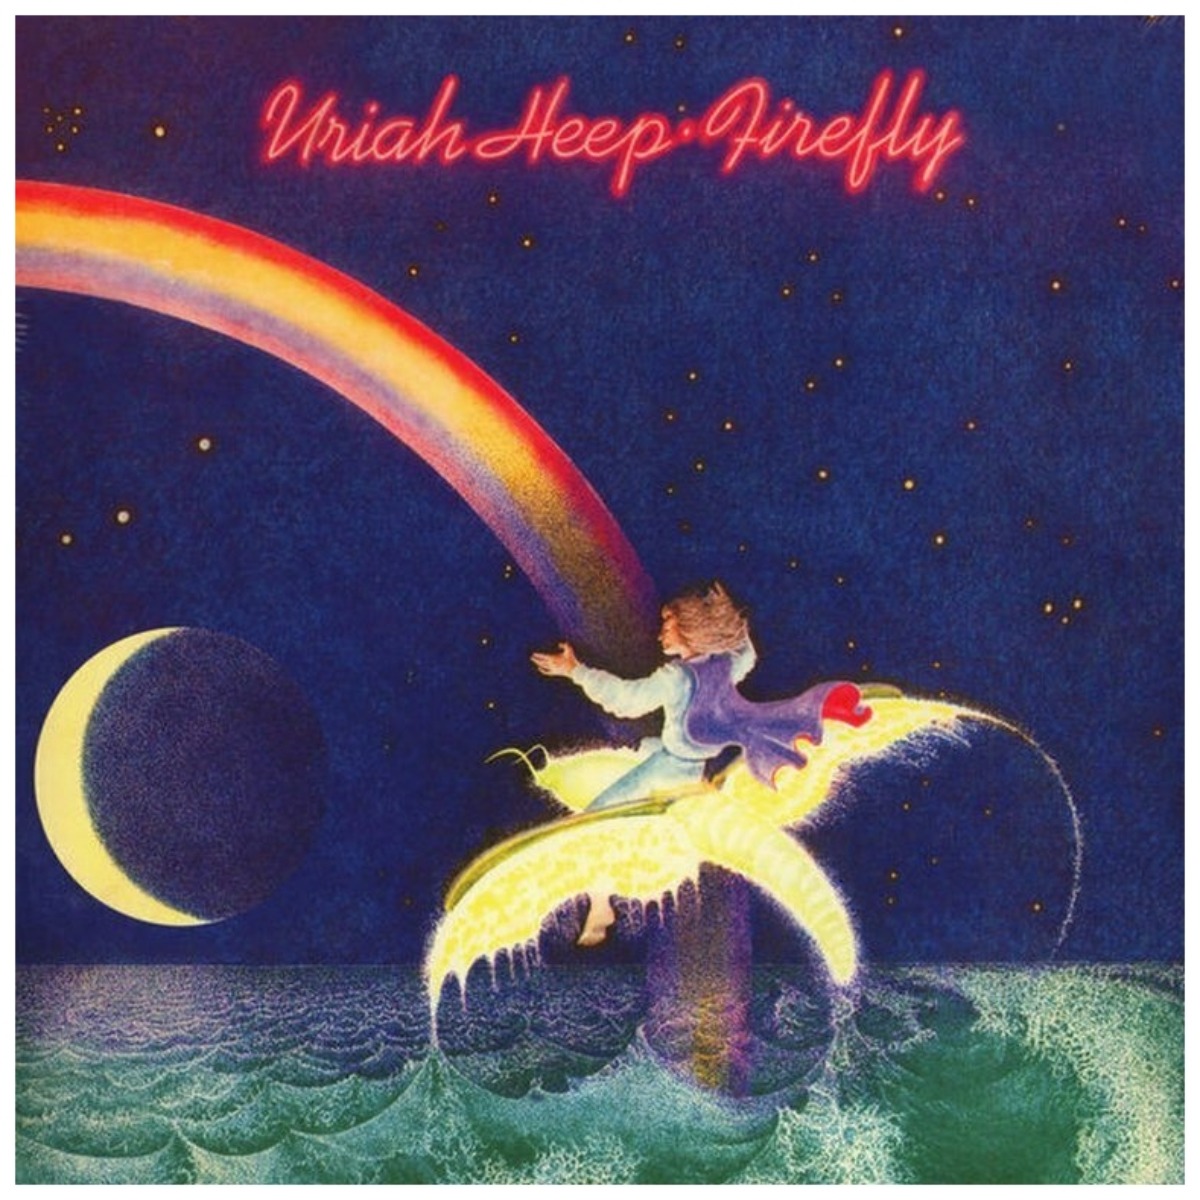 Cover des Albums "Firefly" von Uriah Heep